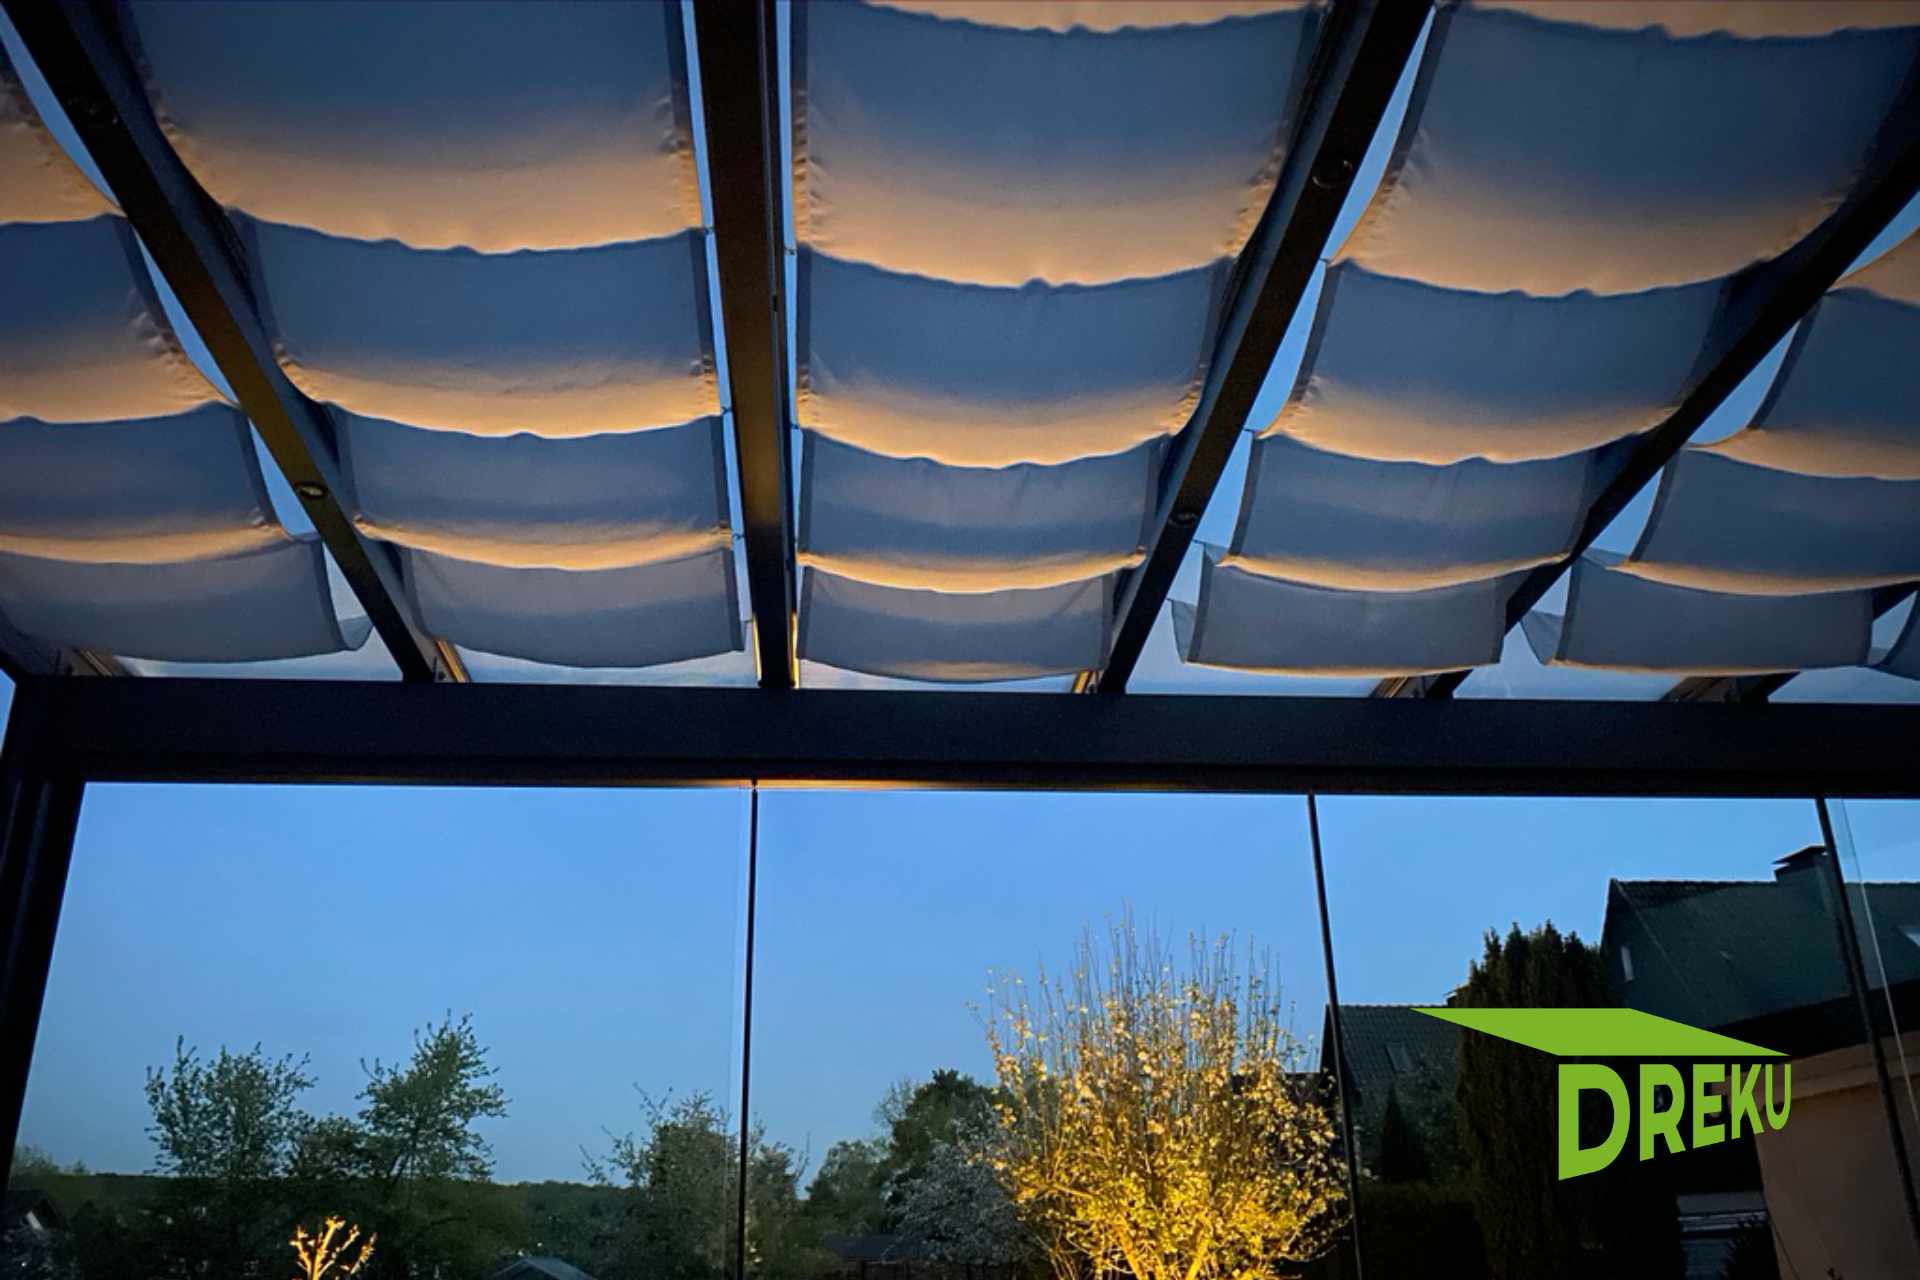 Terrassenüberdachung mit Sonnenschutz Beschattung SOLATEX